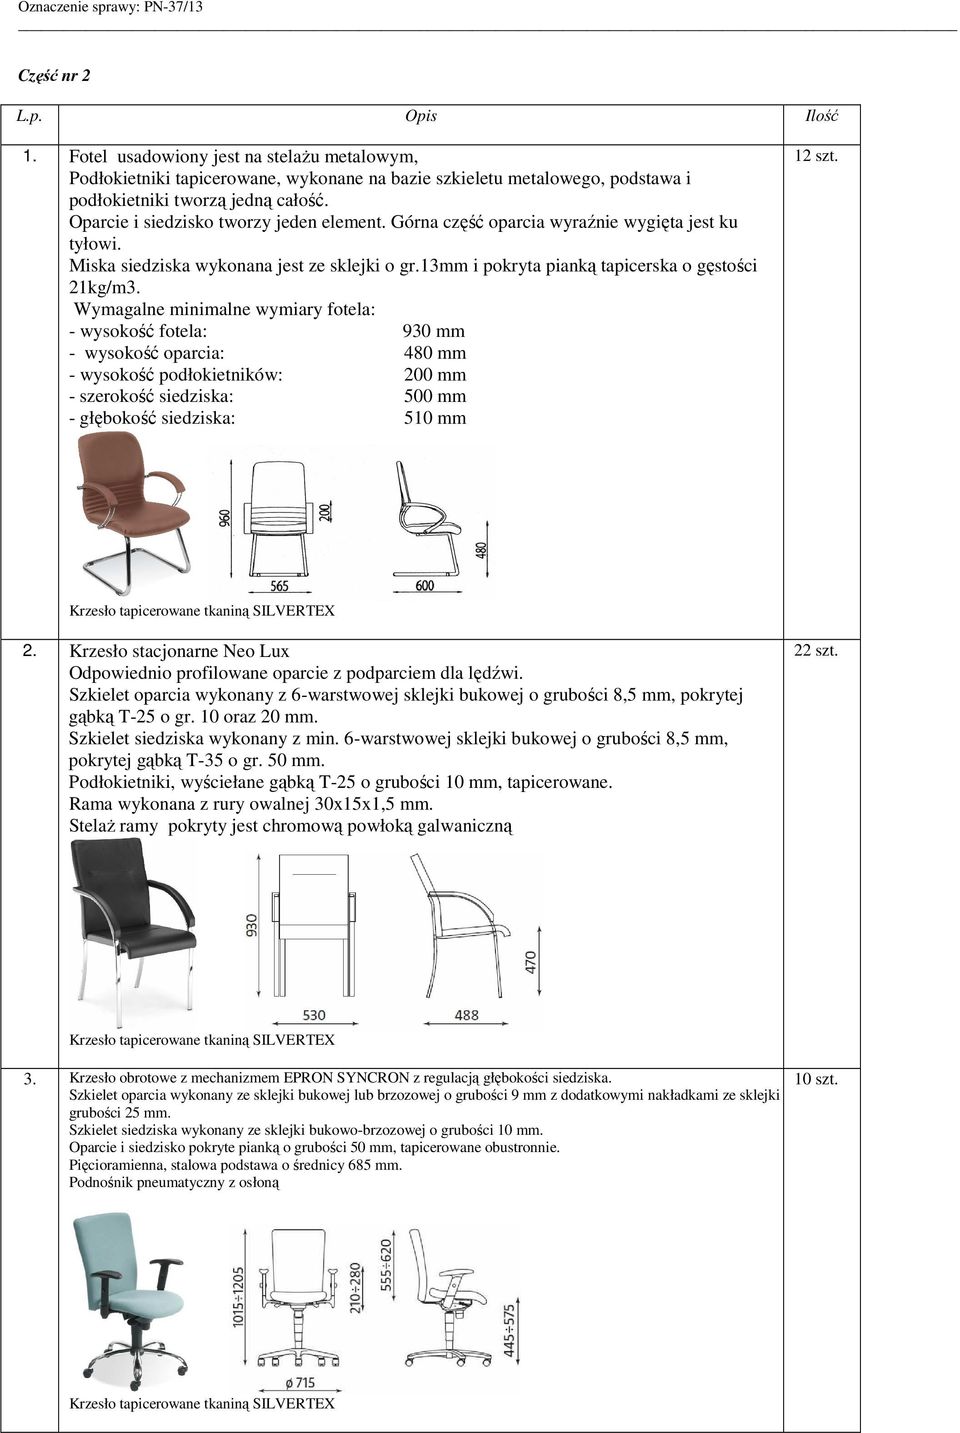 Wymagalne minimalne wymiary fotela: - wysokość fotela: 930 mm - wysokość oparcia: 480 mm - wysokość podłokietników: 200 mm - szerokość siedziska: 500 mm - głębokość siedziska: 510 mm 12 szt.